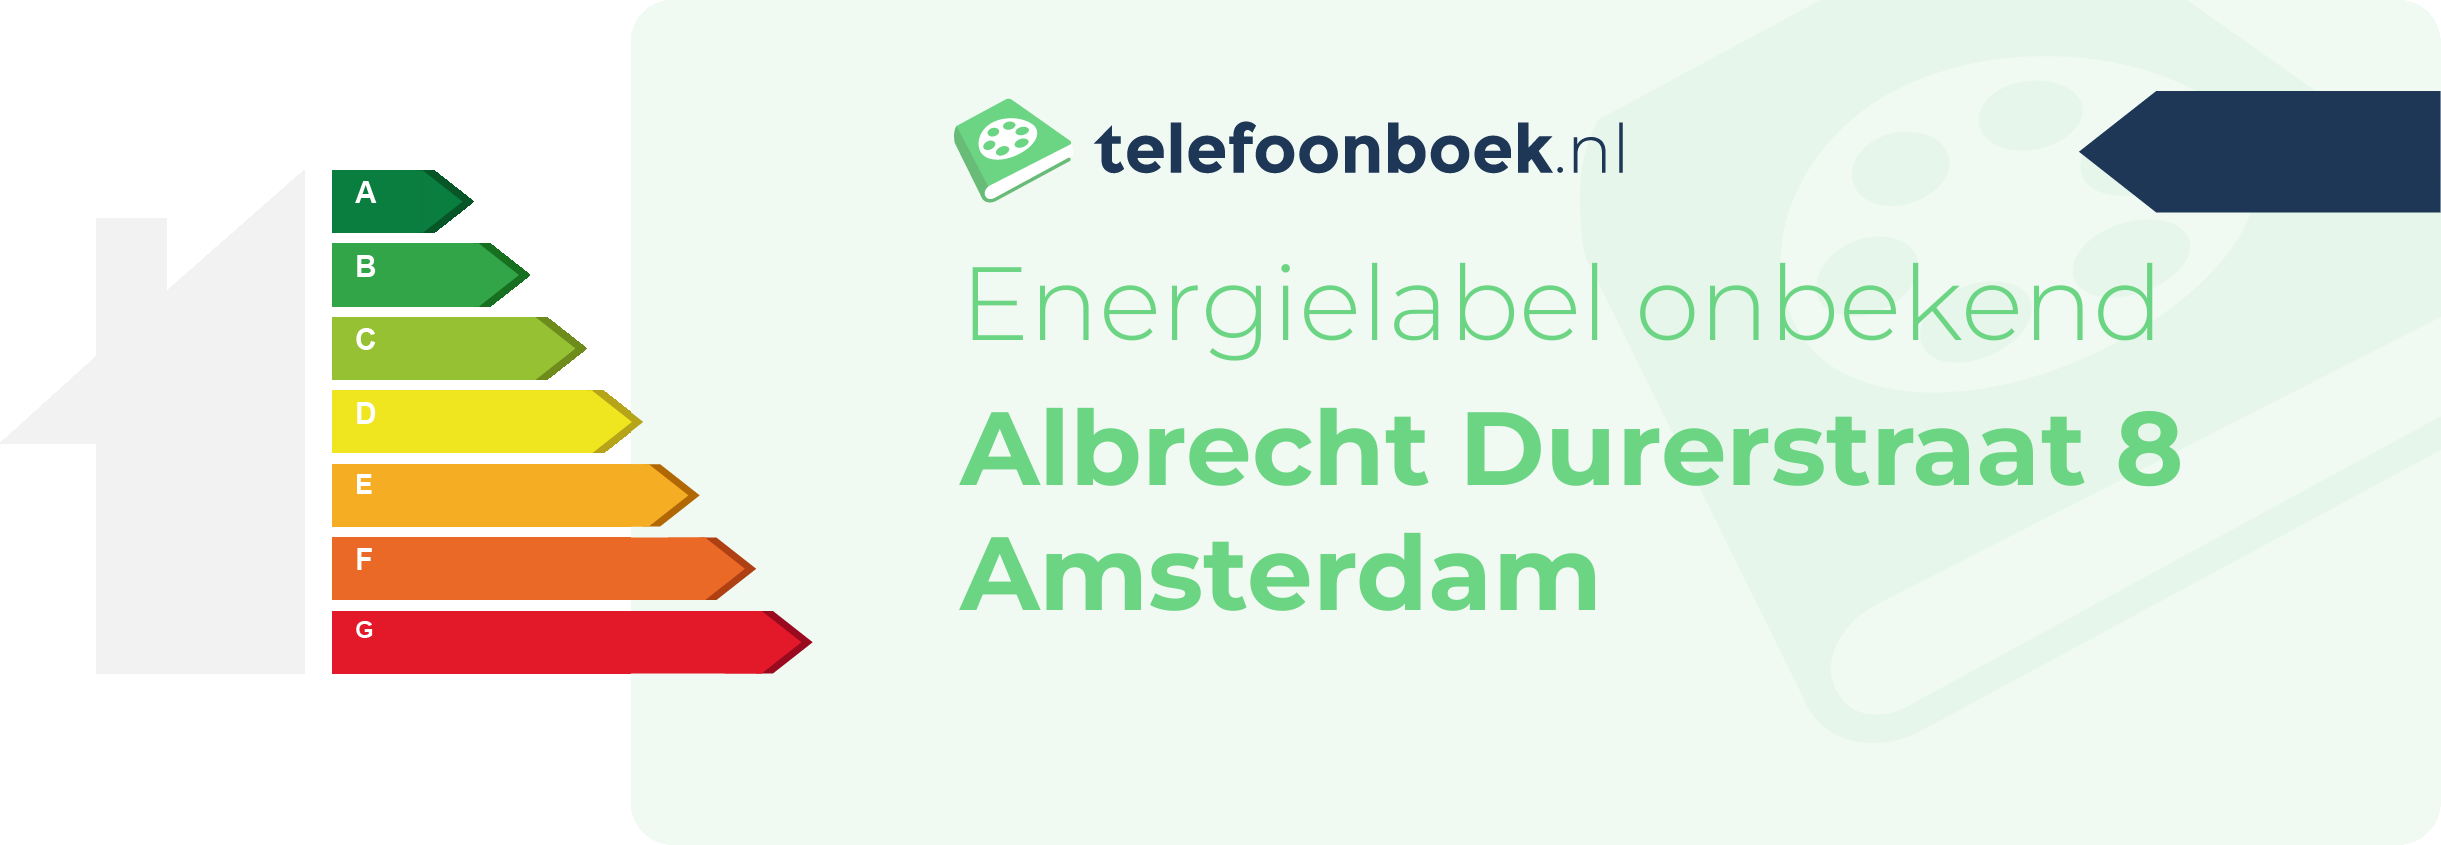 Energielabel Albrecht Durerstraat 8 Amsterdam